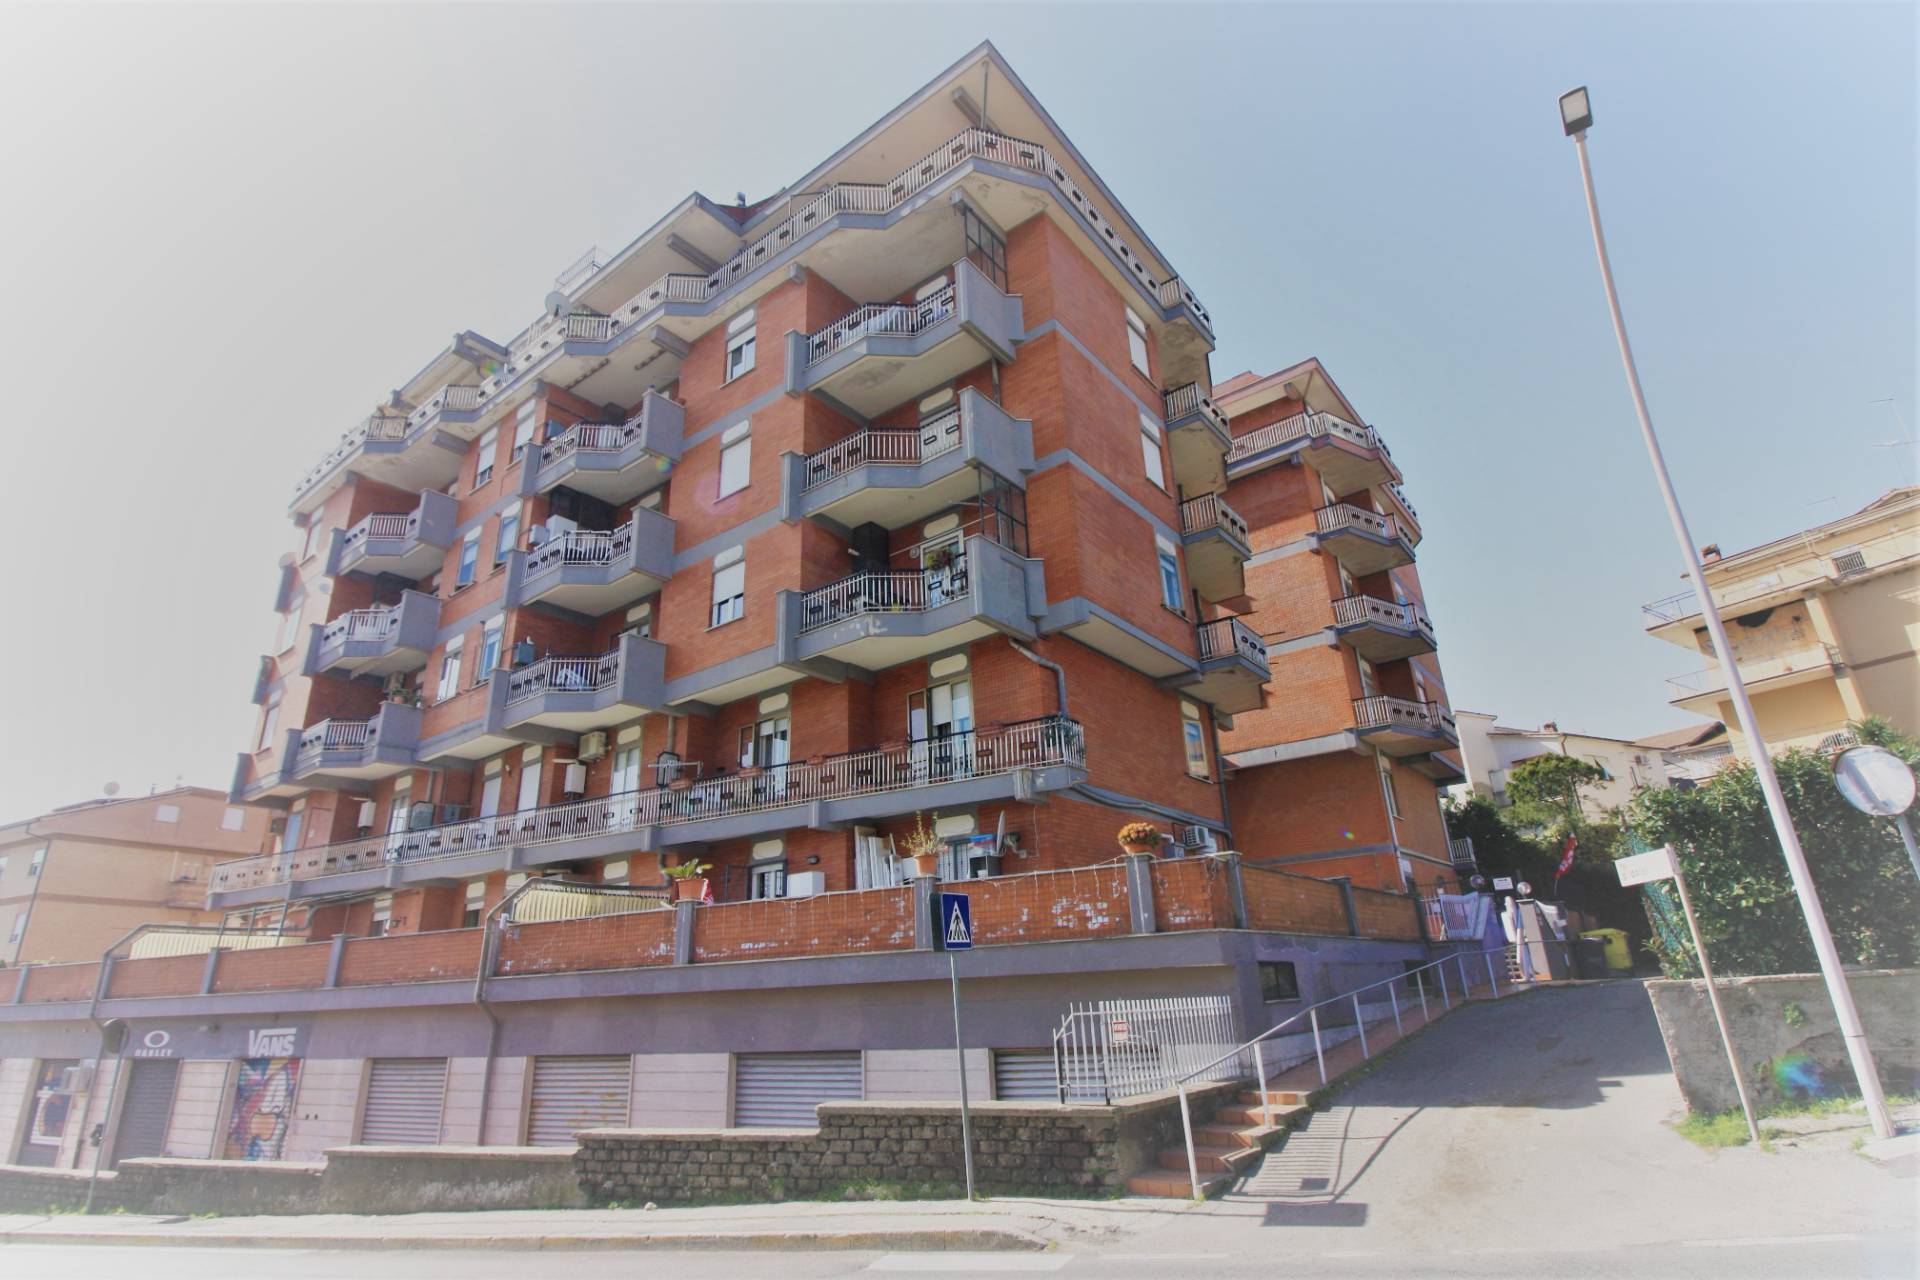 Appartamento in vendita a Ronciglione, 7 locali, zona Località: semi-centrale, prezzo € 92.000 | CambioCasa.it